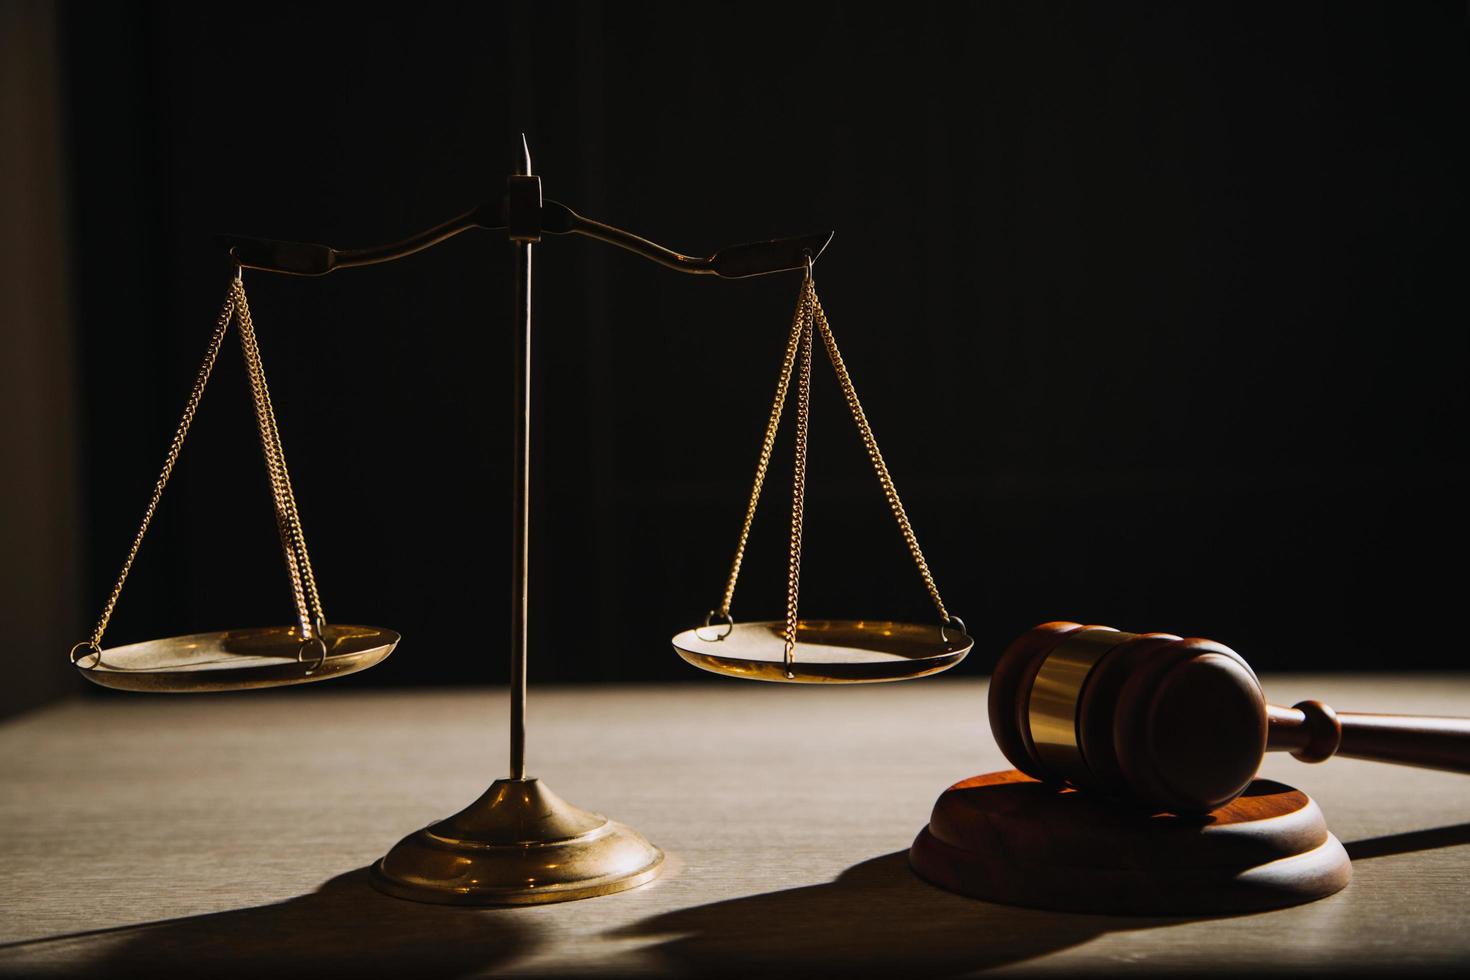 rättvisa och lag koncept.manlig domare i en rättssal med klubban, arbetar med, dator och dockningstangentbord, glasögon, på bordet i morgonljus foto